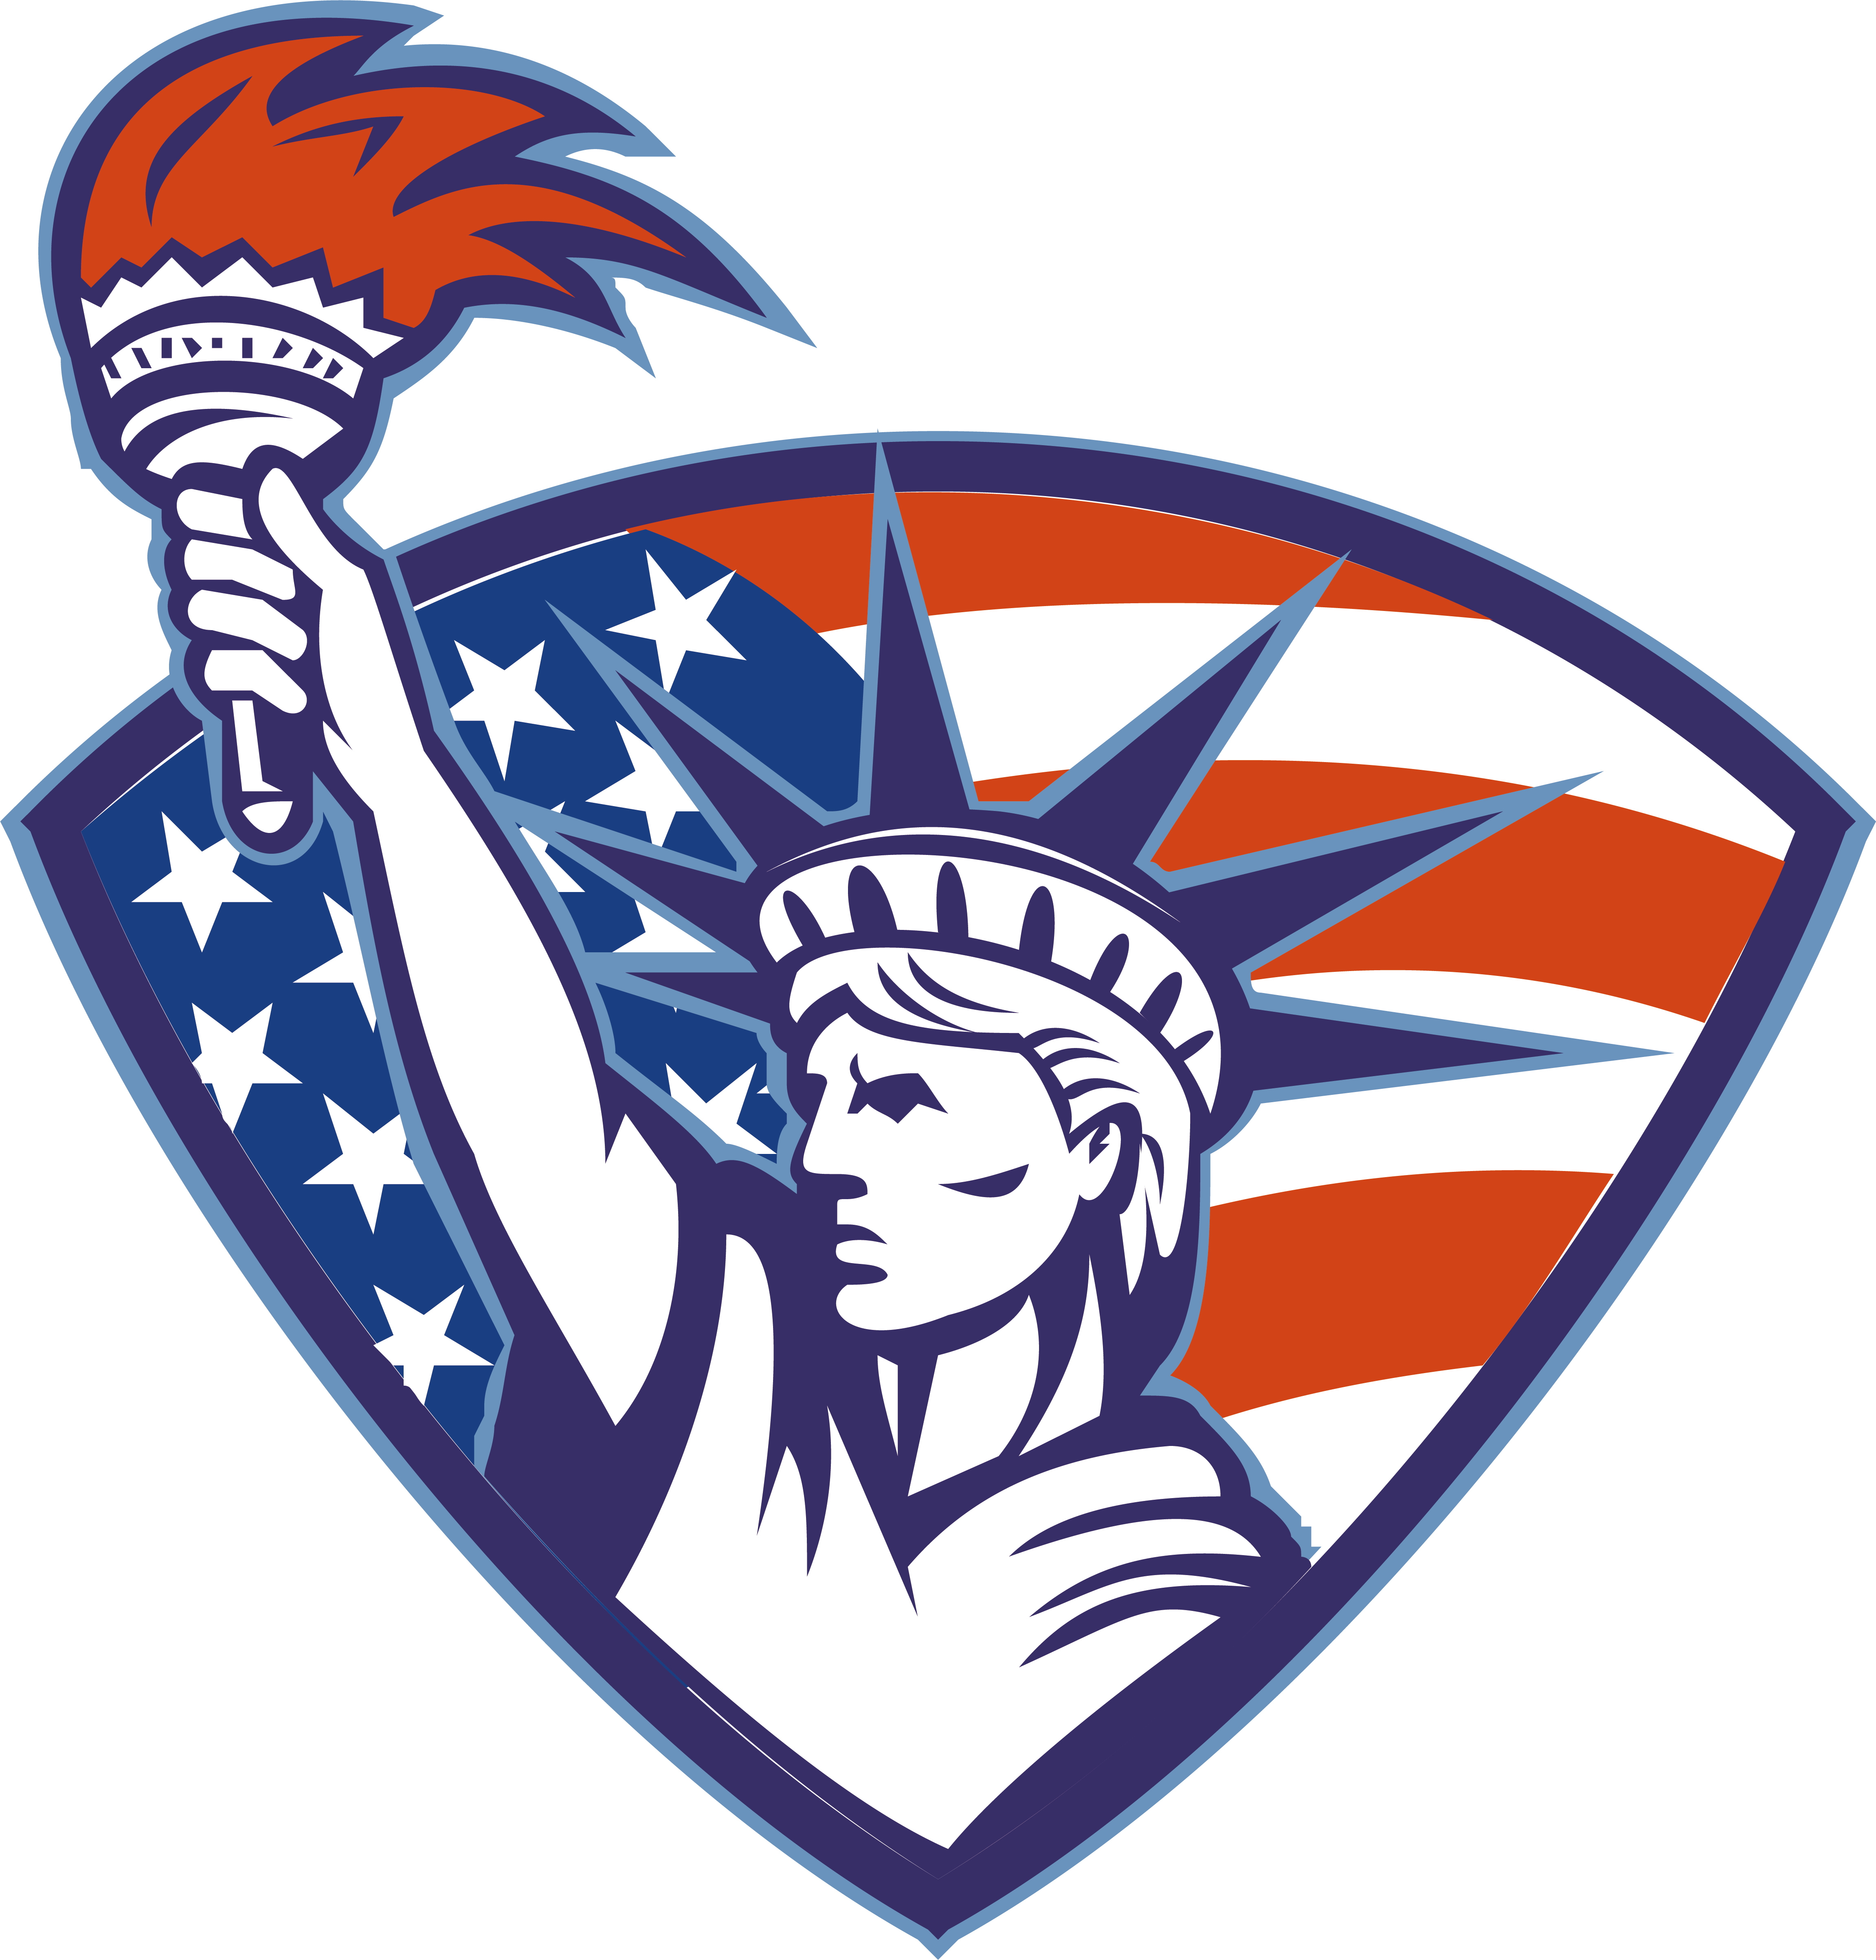 Estatua De La Libertad, Libre De Regalías De La Antorcha - Statue Of Liberty Mascot (4606x4812)